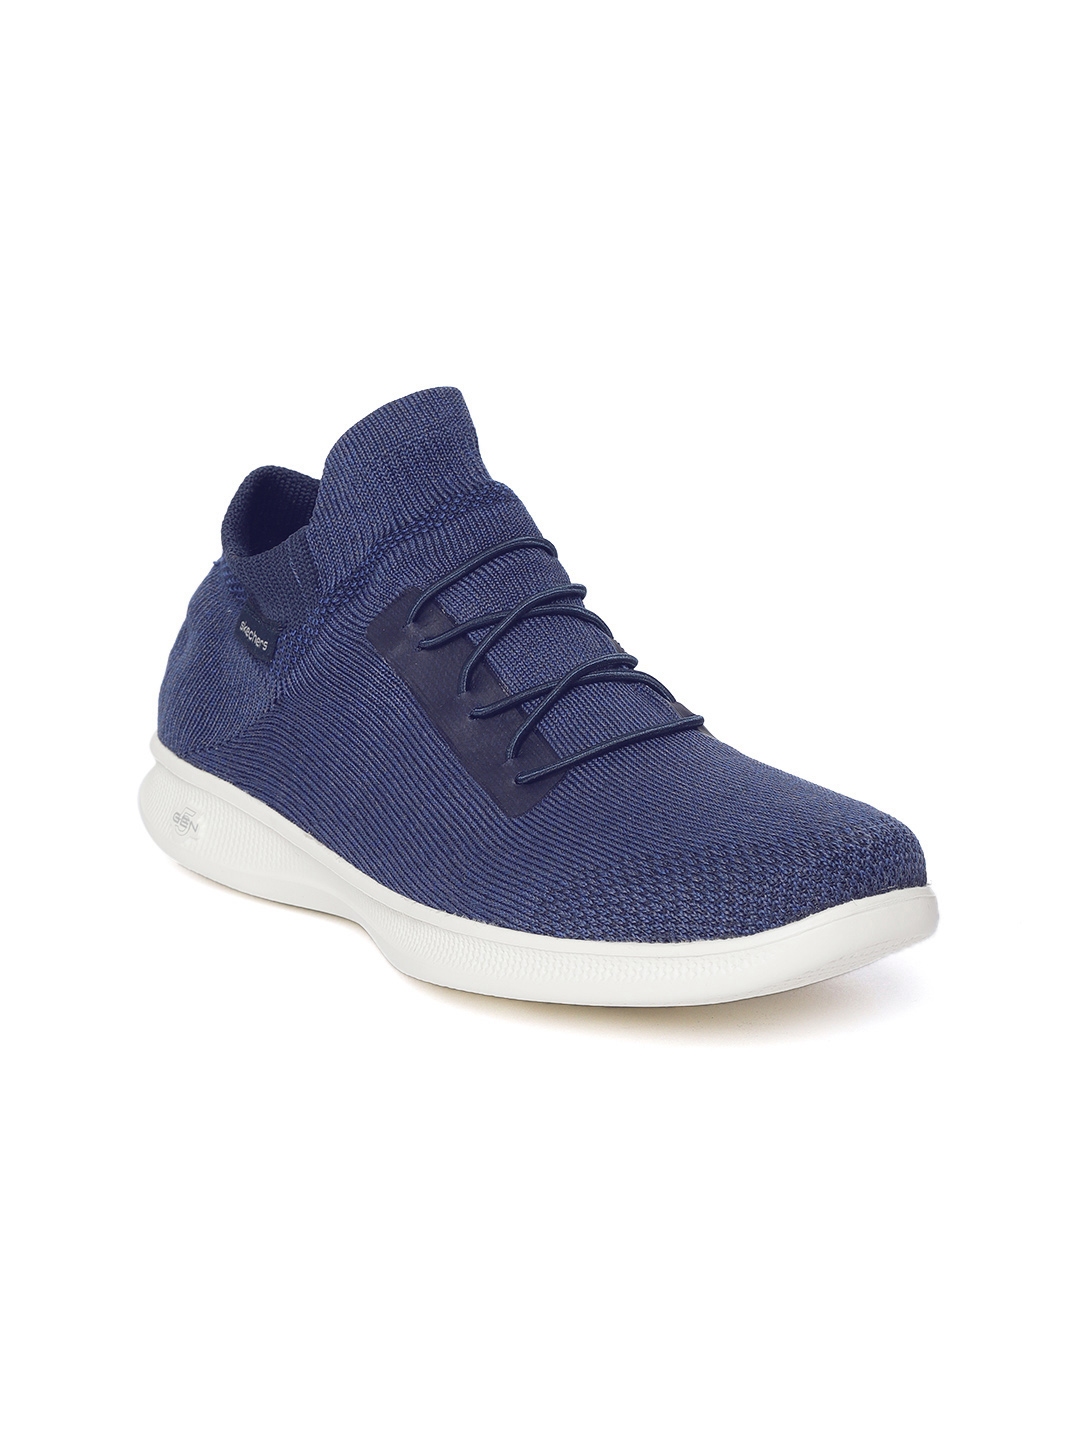 Buy Skechers Women Blue Go Step Lite Effortless Walking Shoes - Sports for Women | Myntra